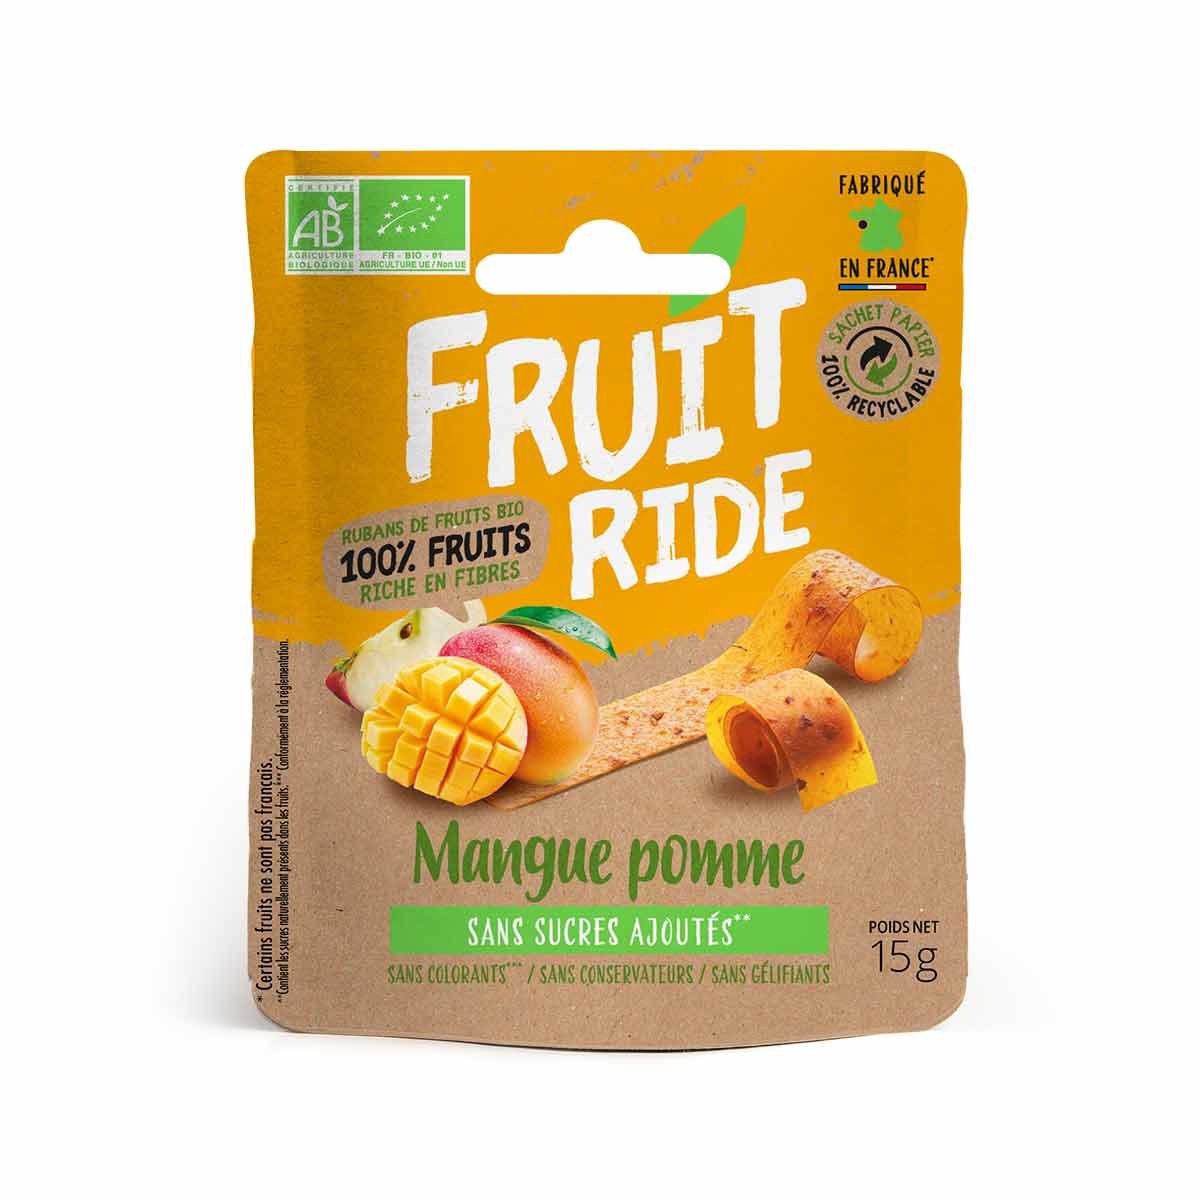 Láminas de frutas ecológicas Fruit Ride - Mango, manzana